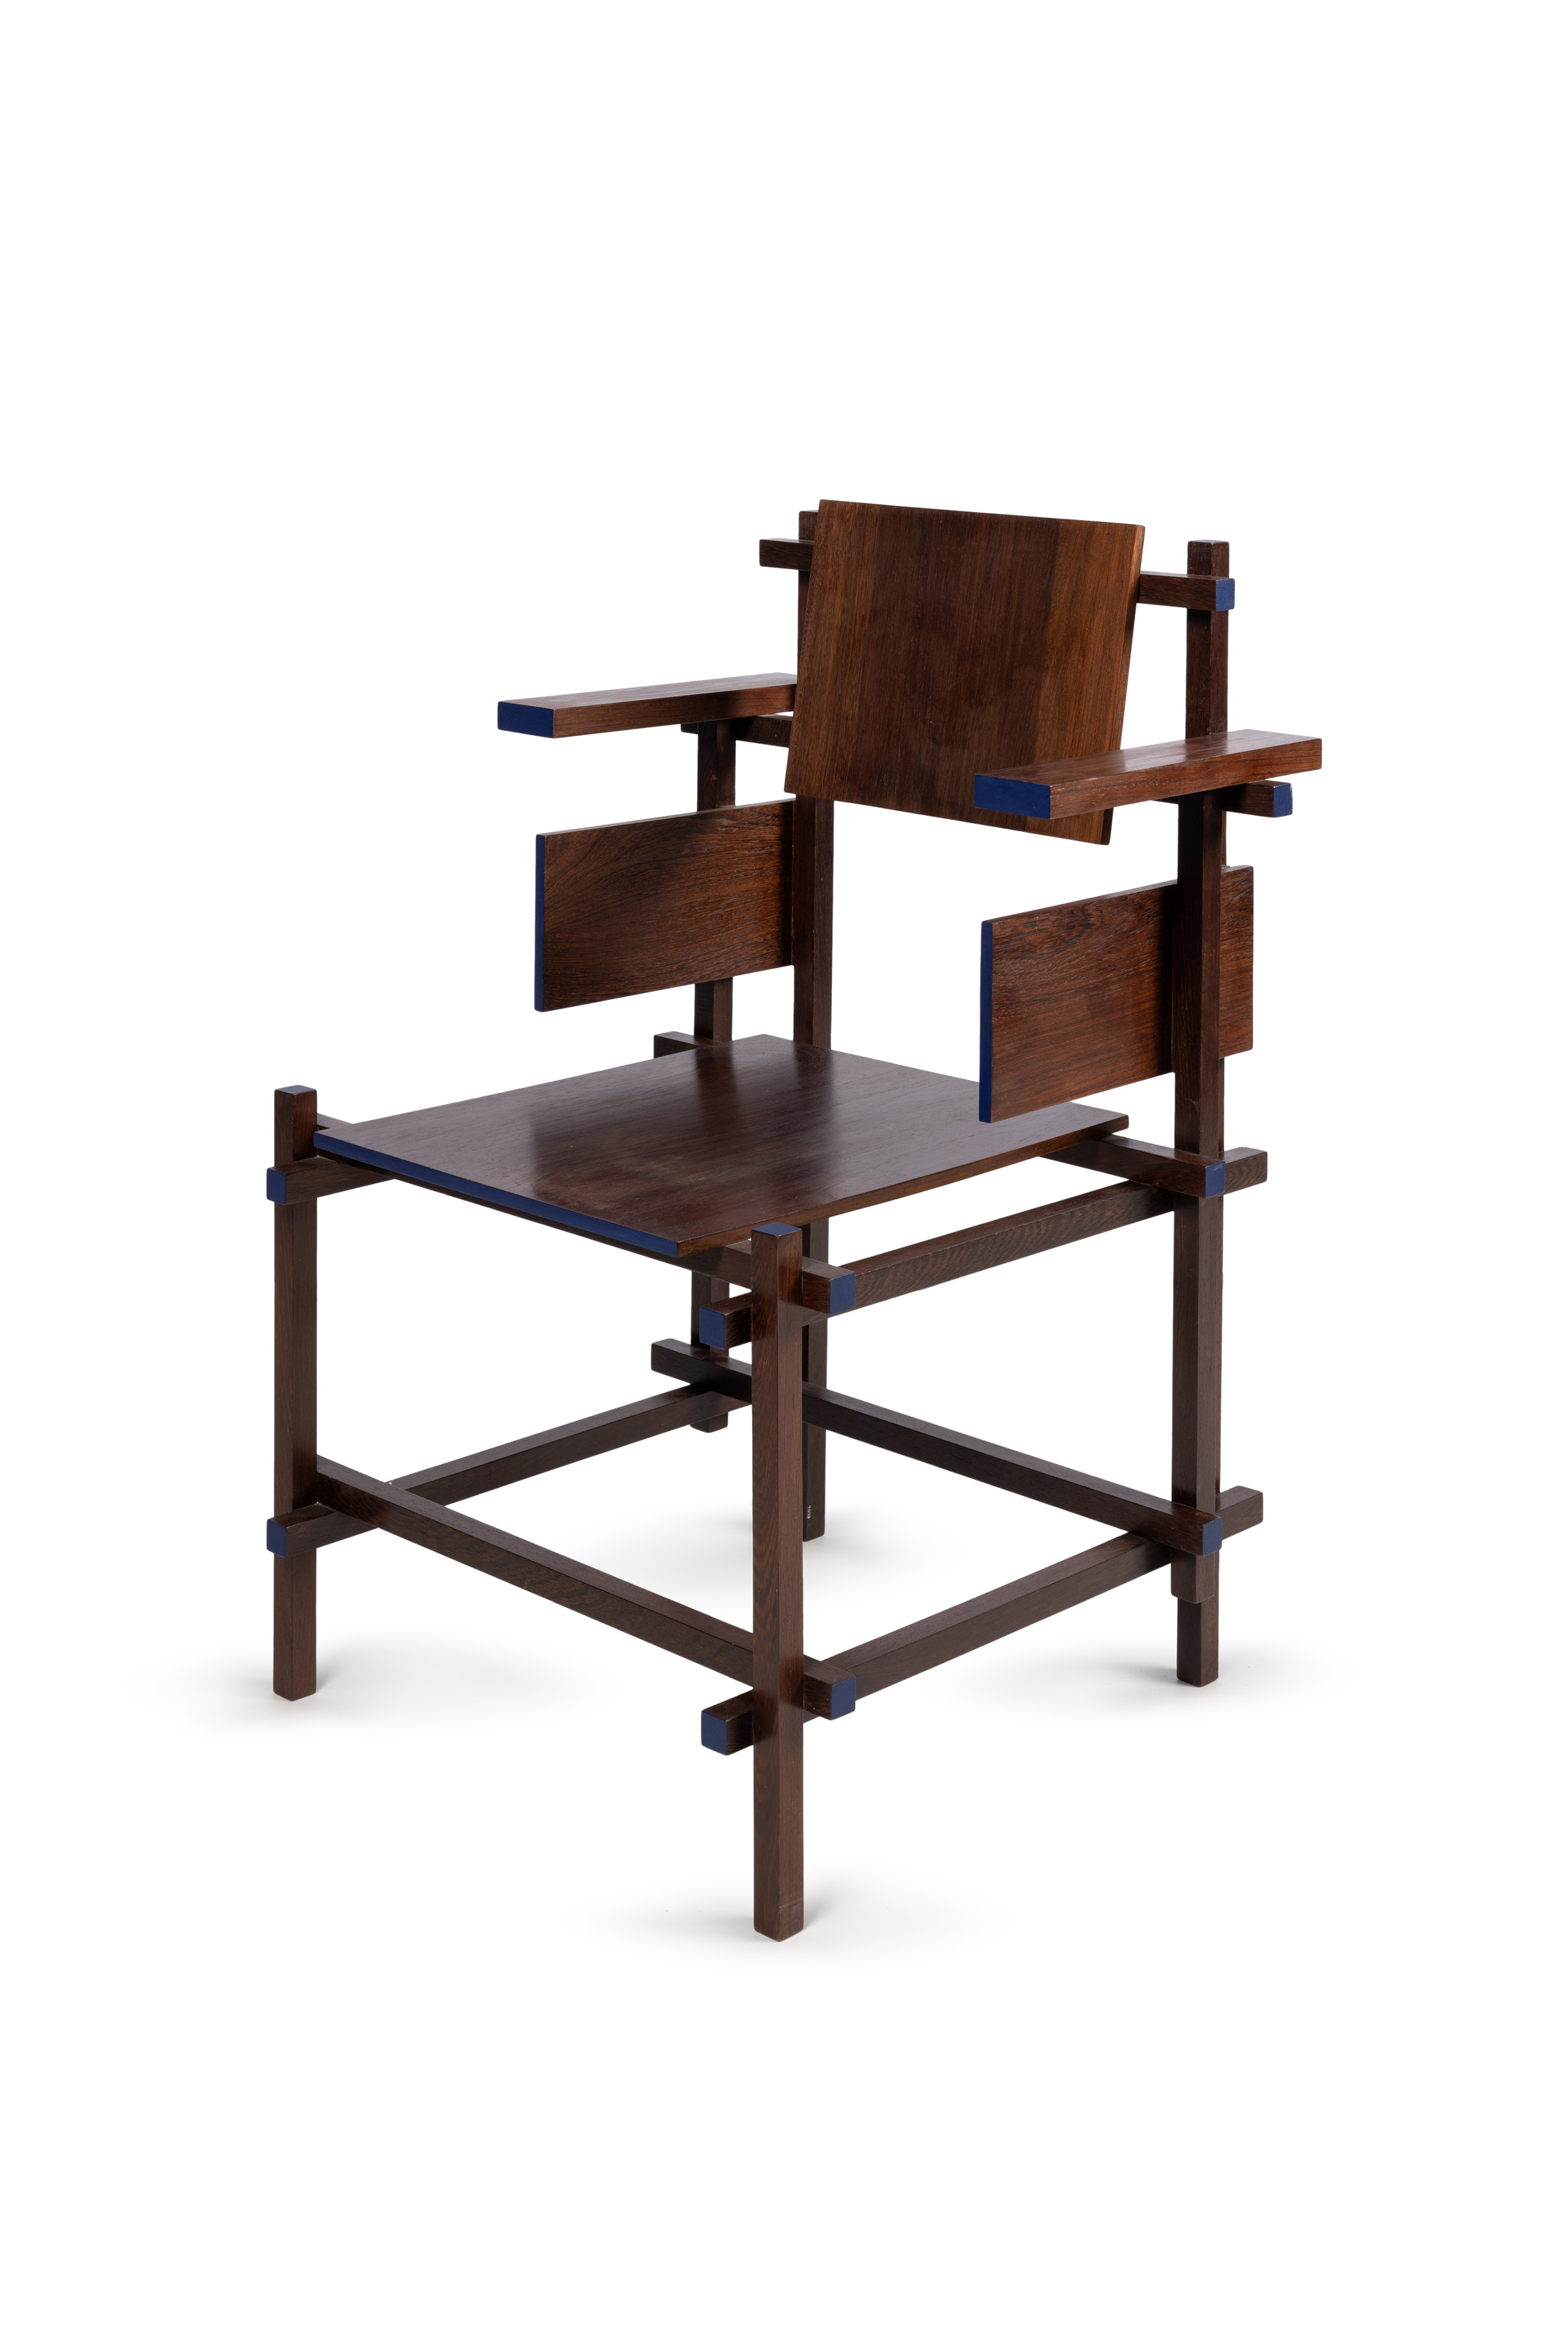 Armchair (hogestoel) designed by Gerrit Rietveld